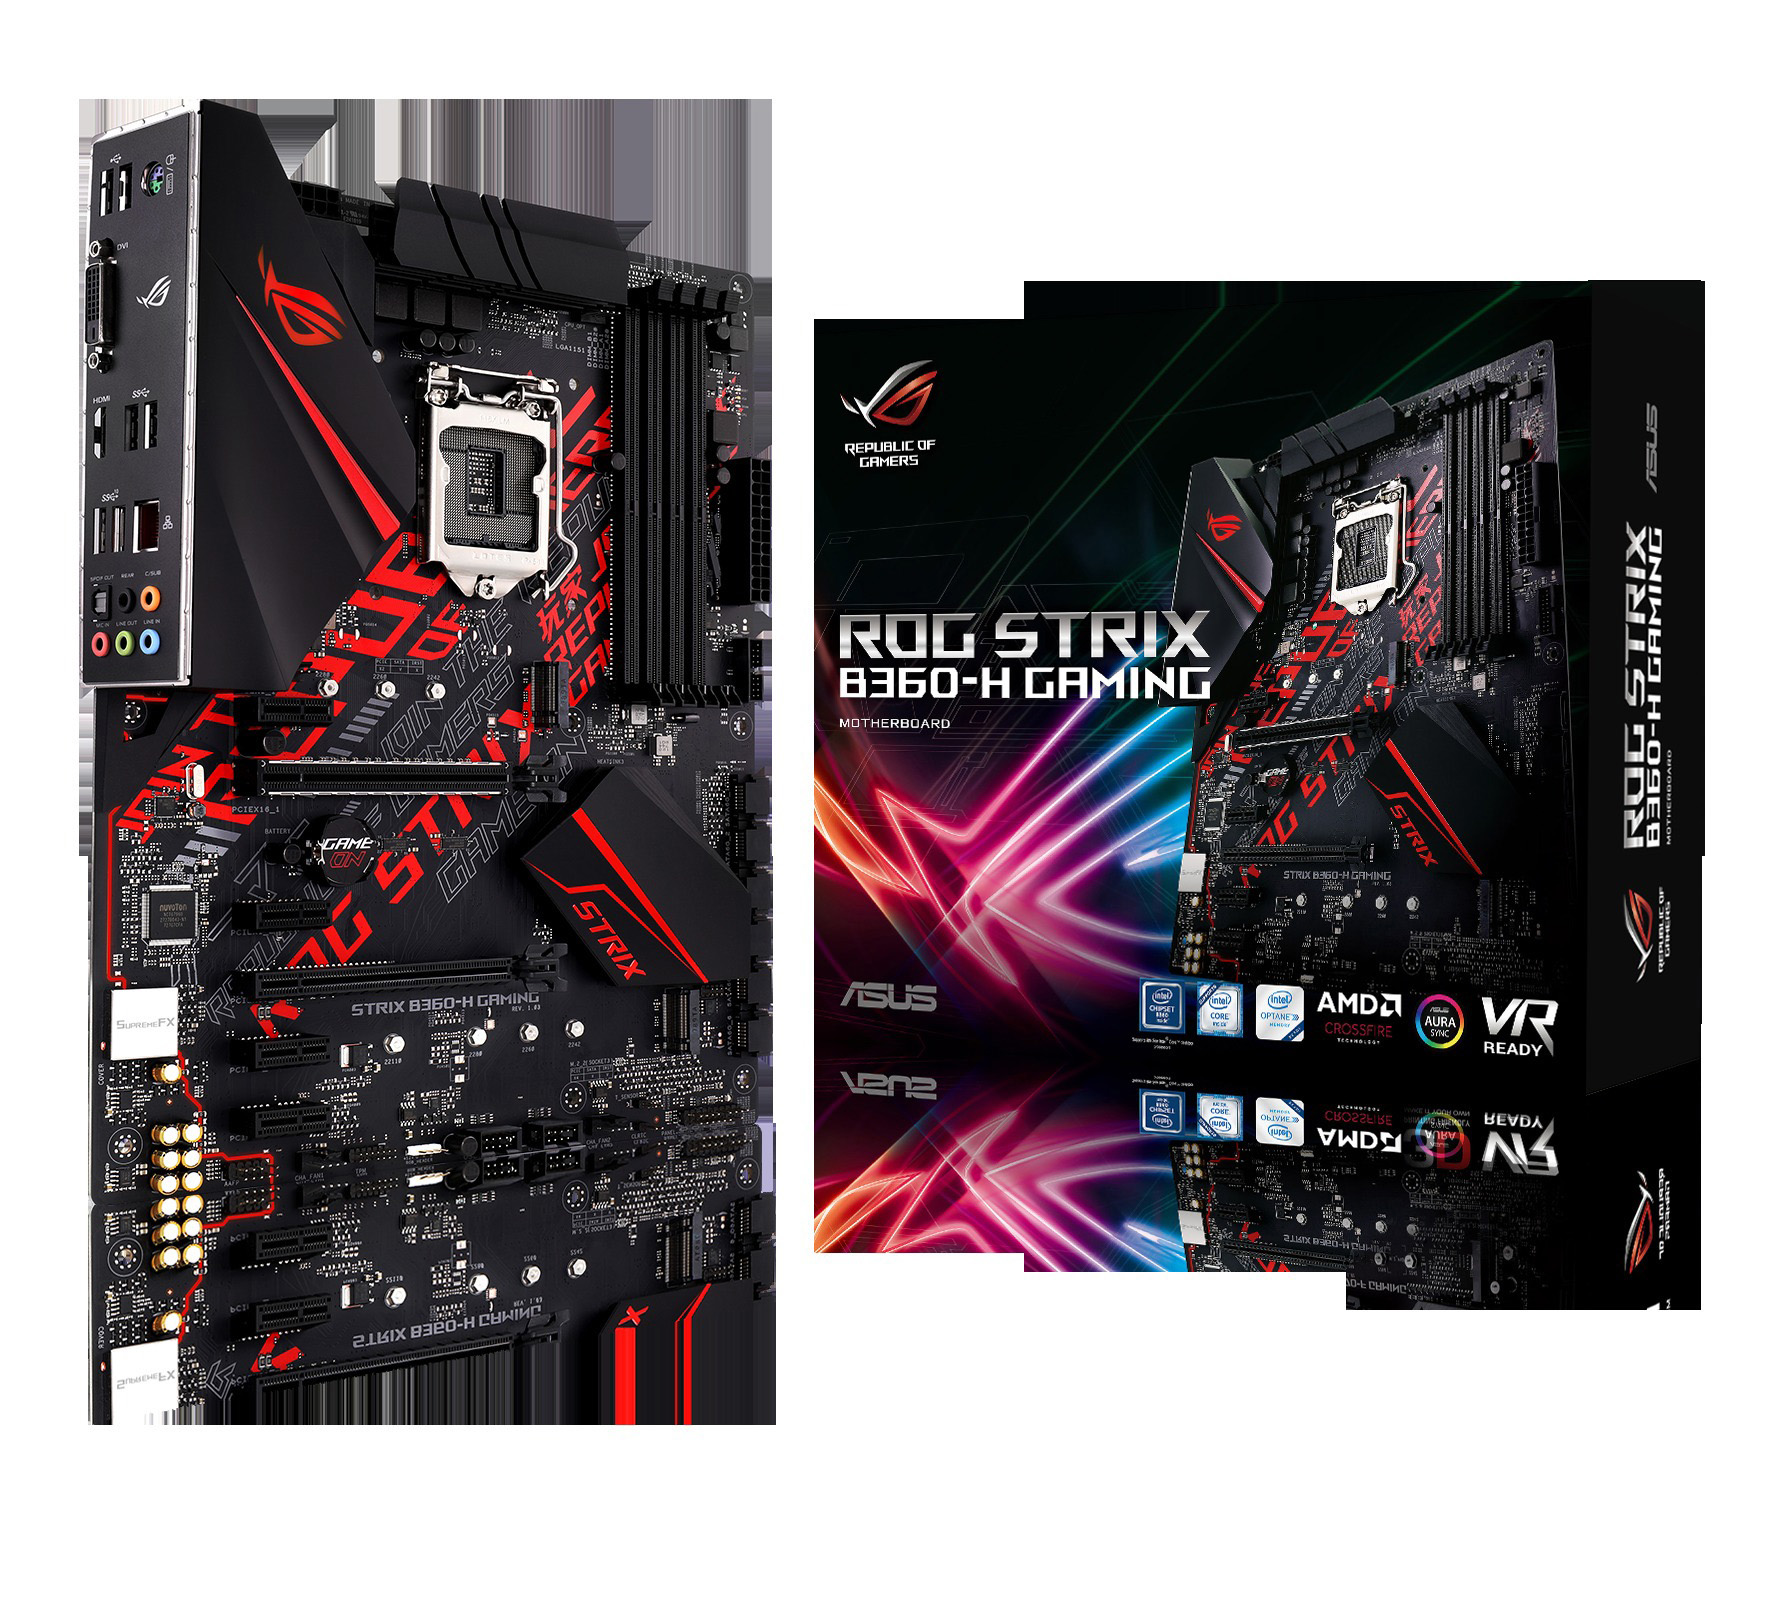 ASUS Mainboard Strix schwarz B360-H ROG Gaming